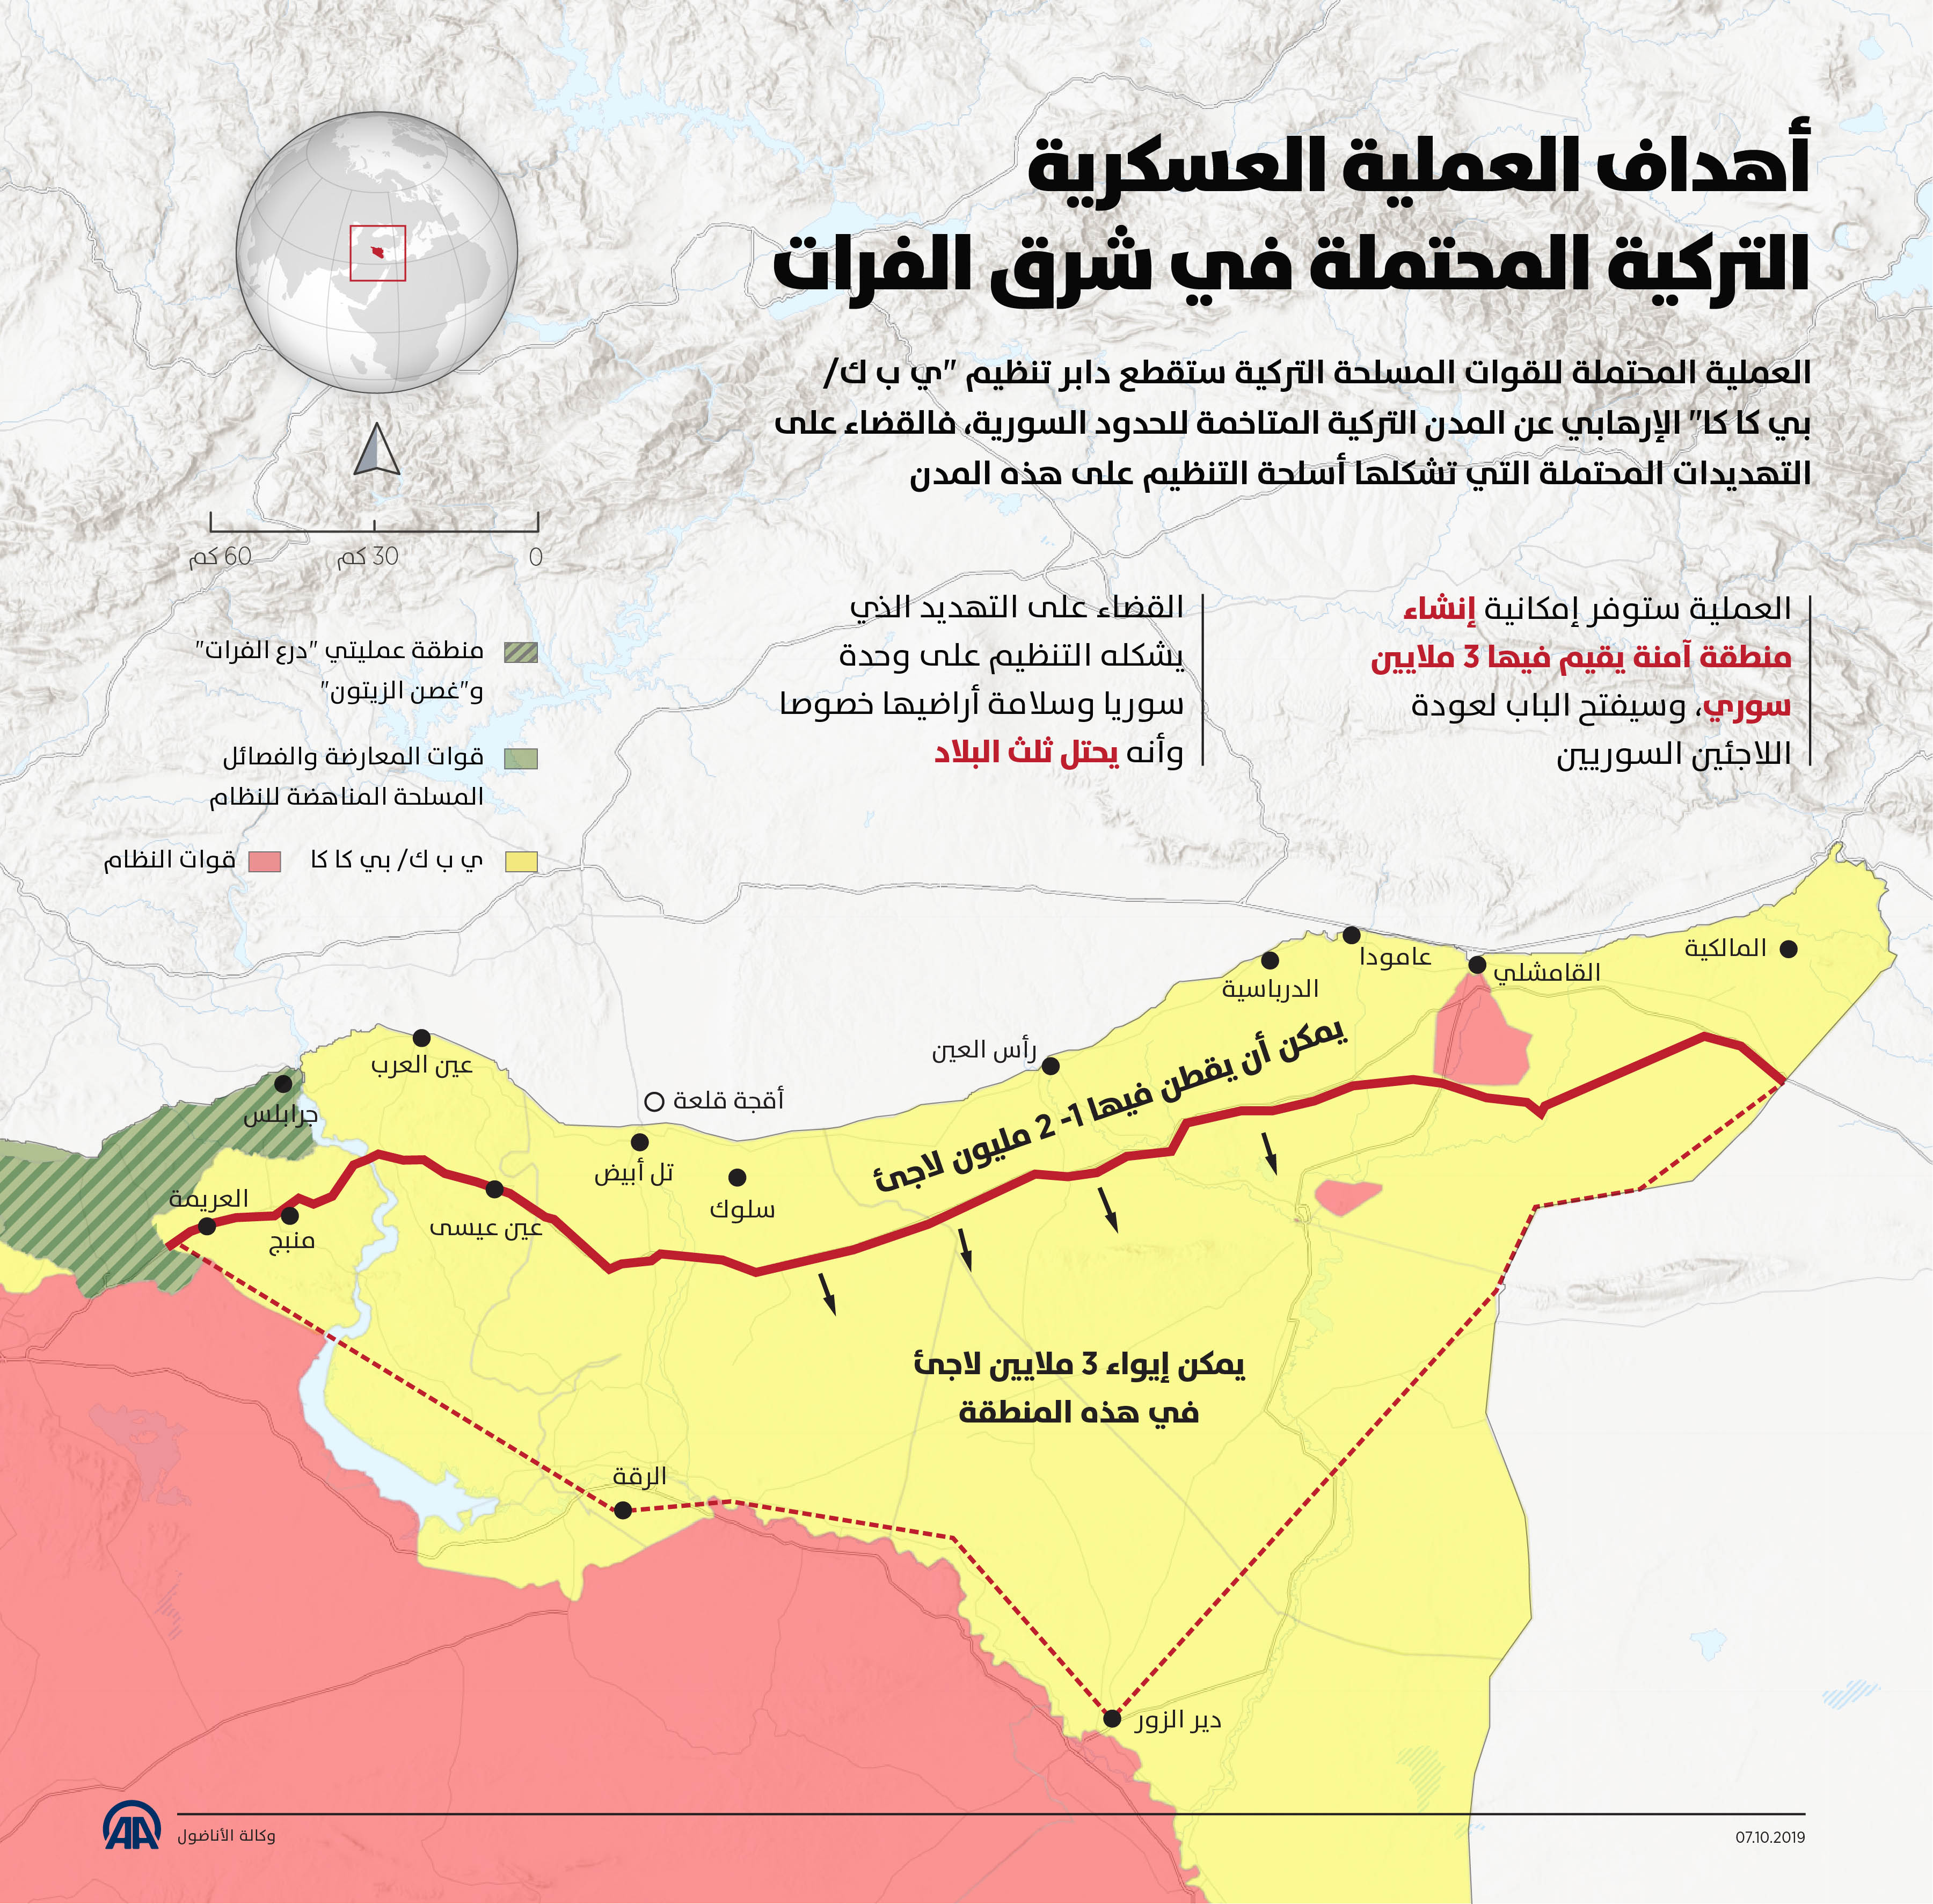 أهداف العملية العسكريةالتركية المحتملة في شرق الفرات